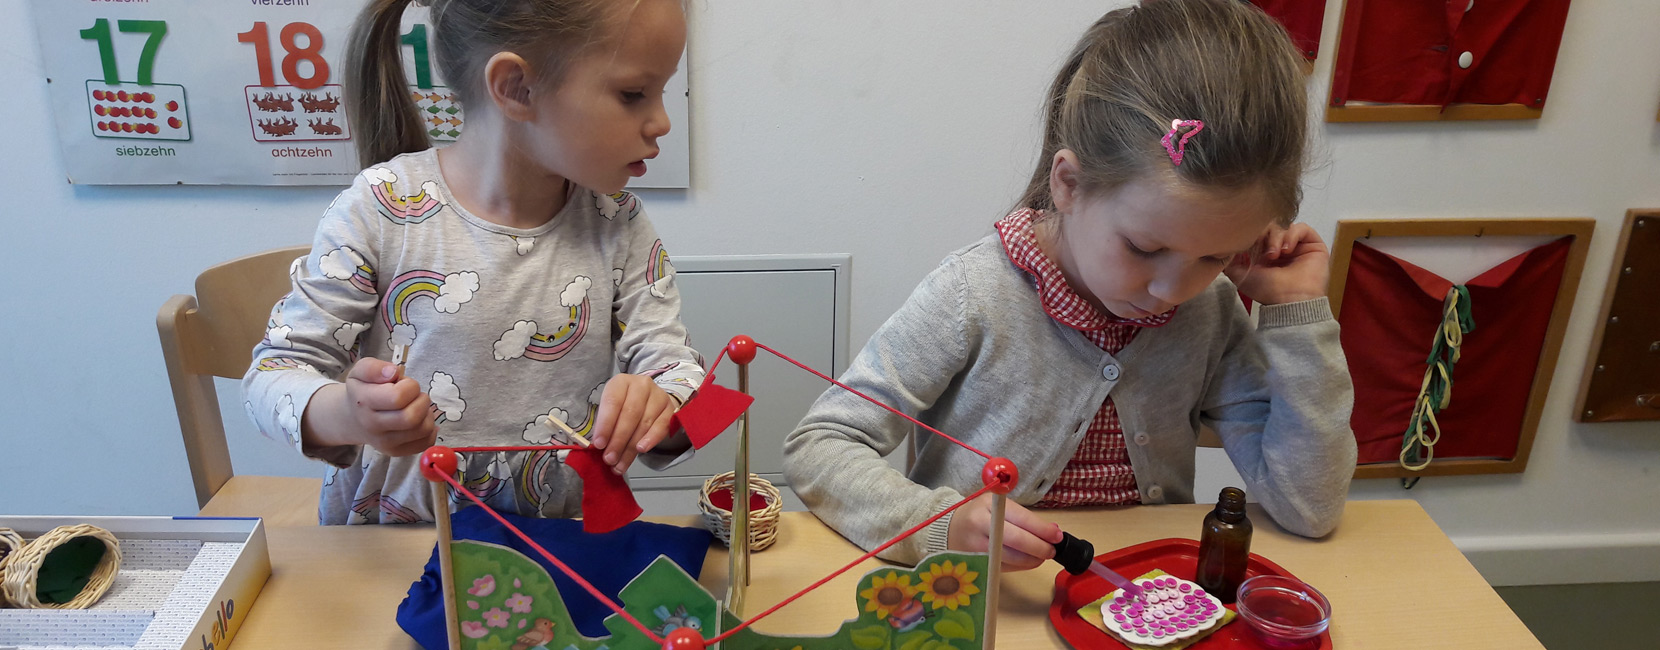 Montessori - Kurs für Kinder in der Kleingruppe - Schulvorbereitung